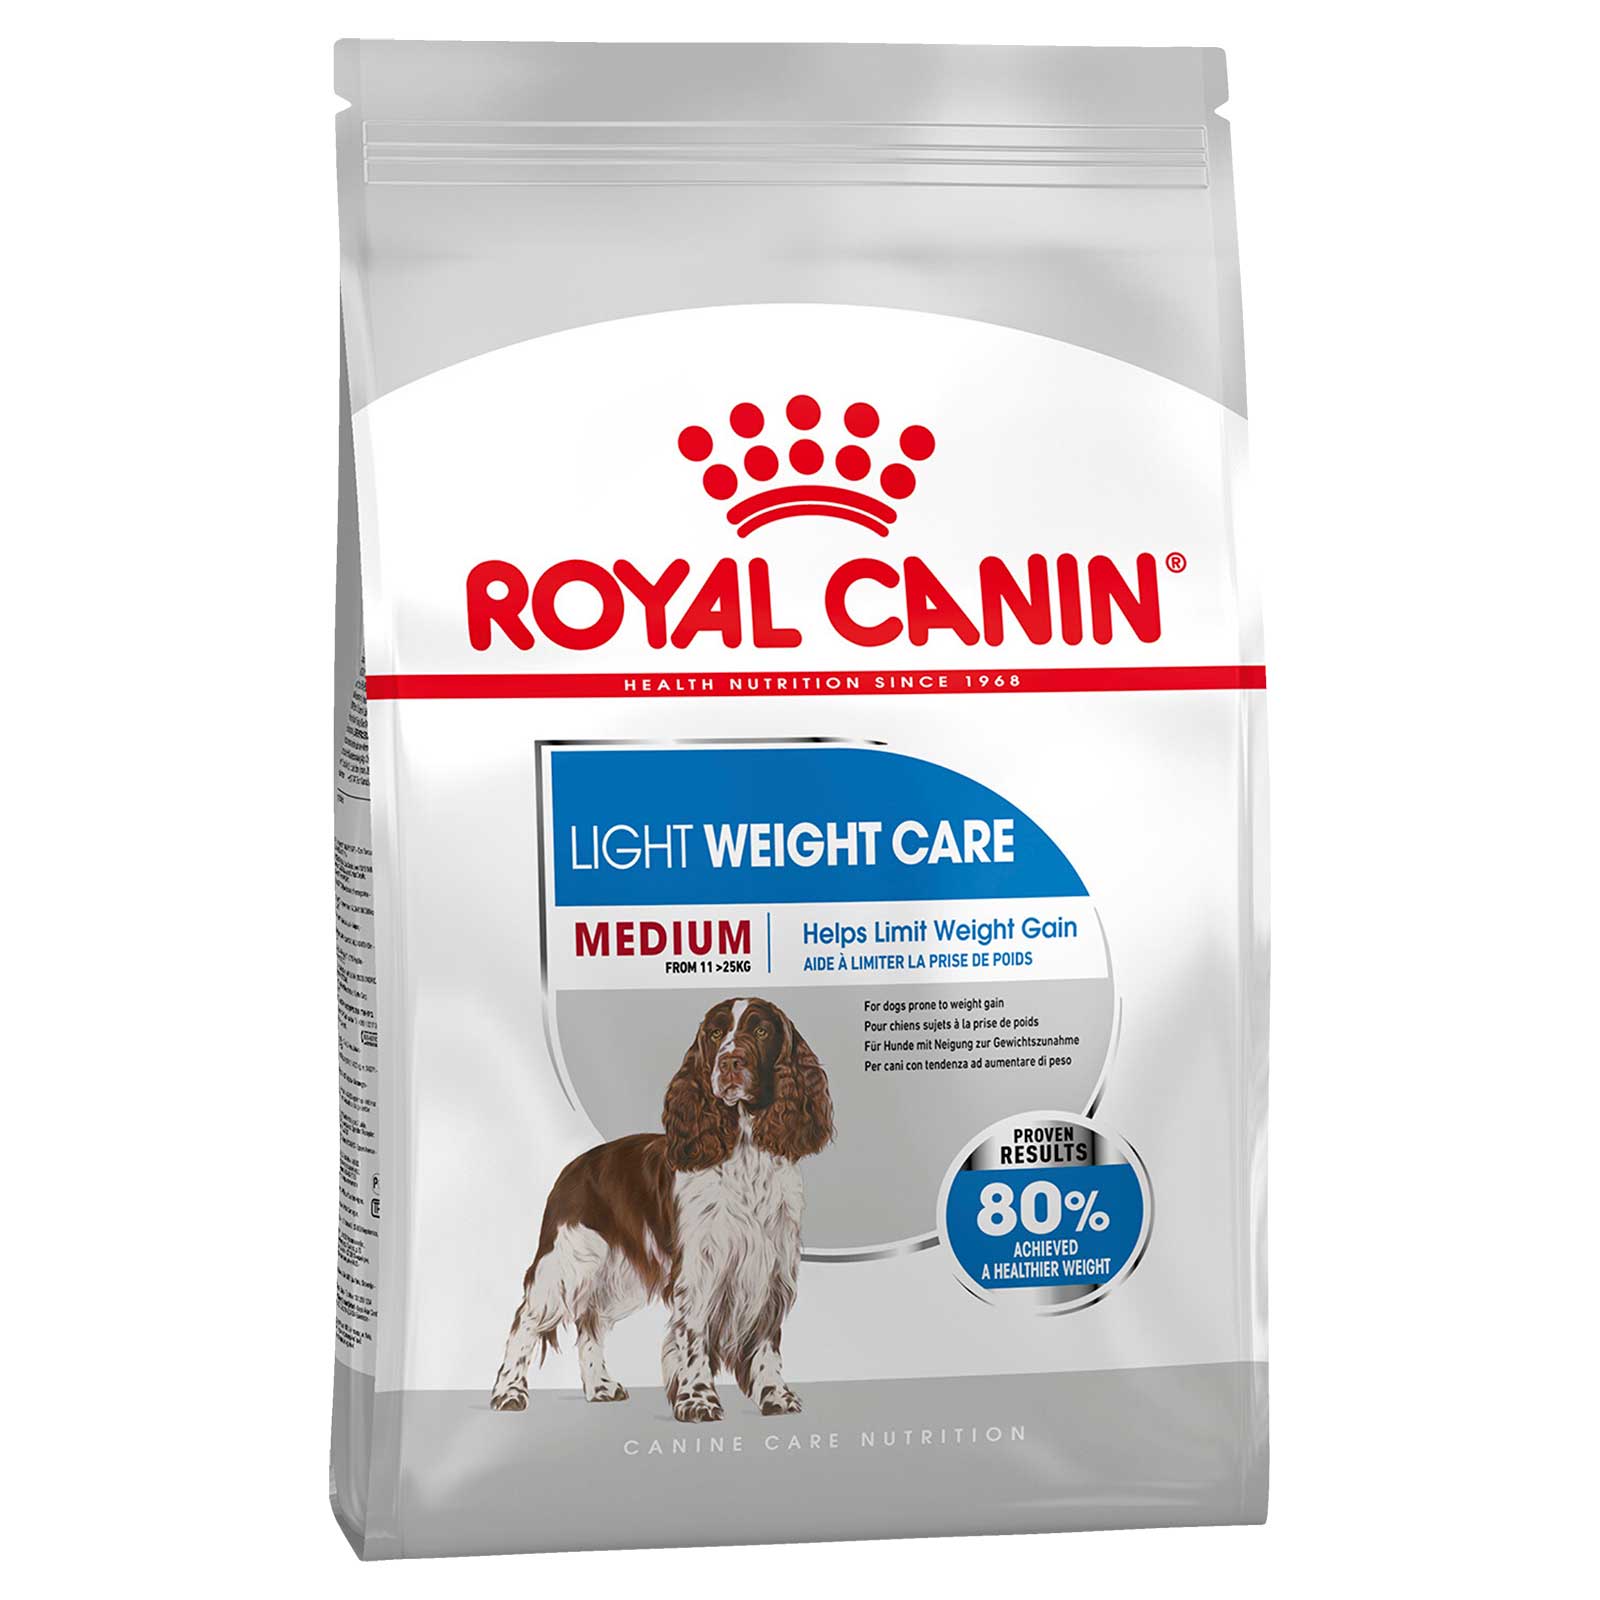 Royal Canin Dog Food Light Weight Care Medium